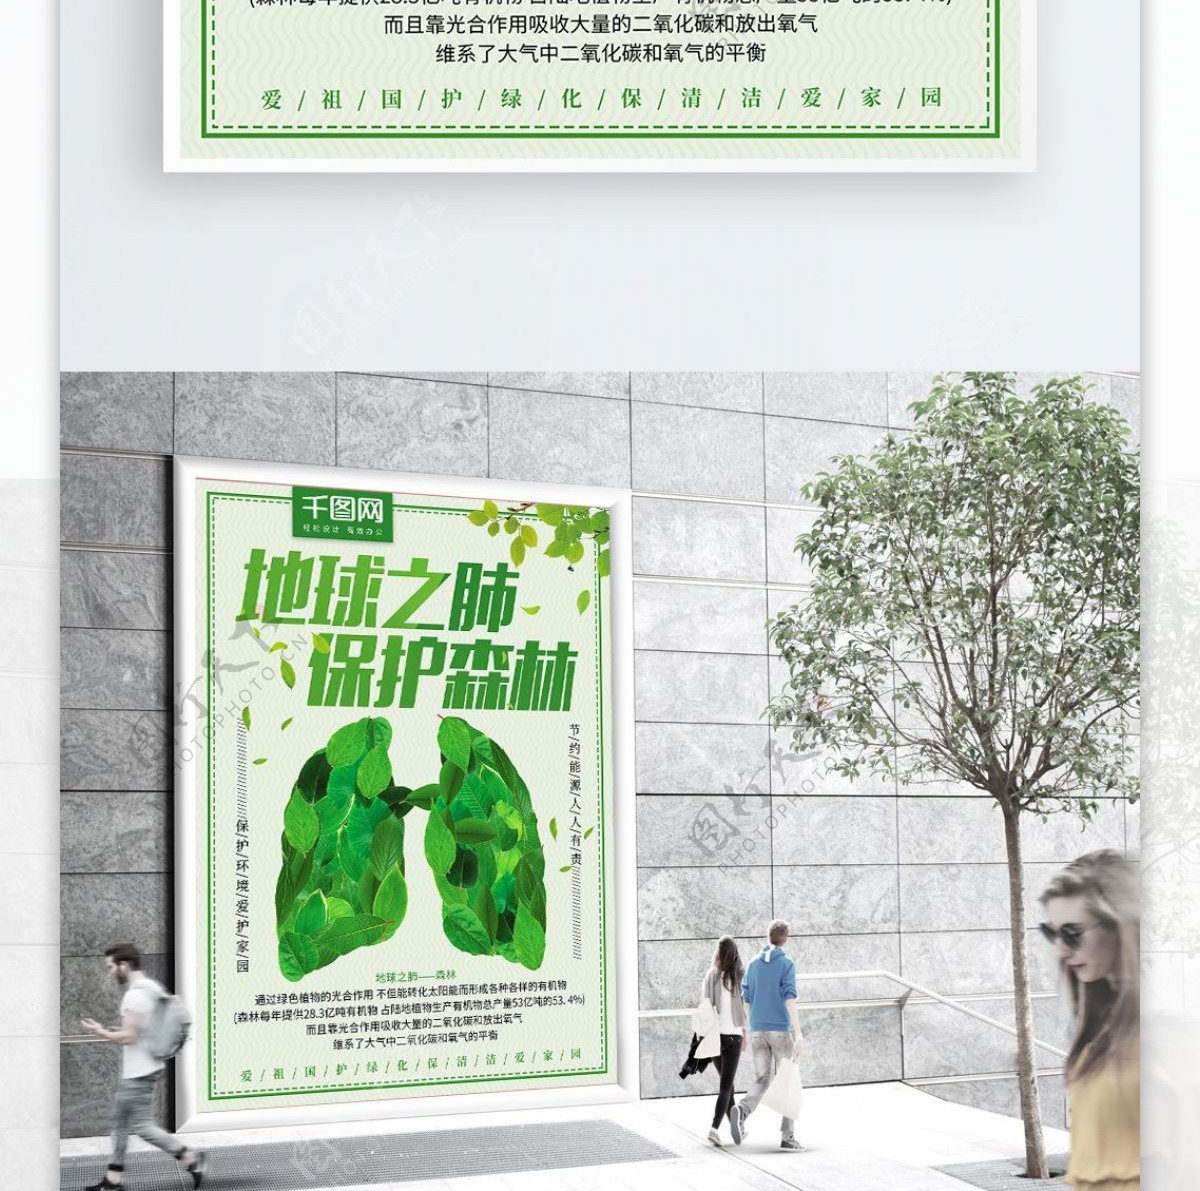 地球之肺保护森林绿色简约小清新公益海报